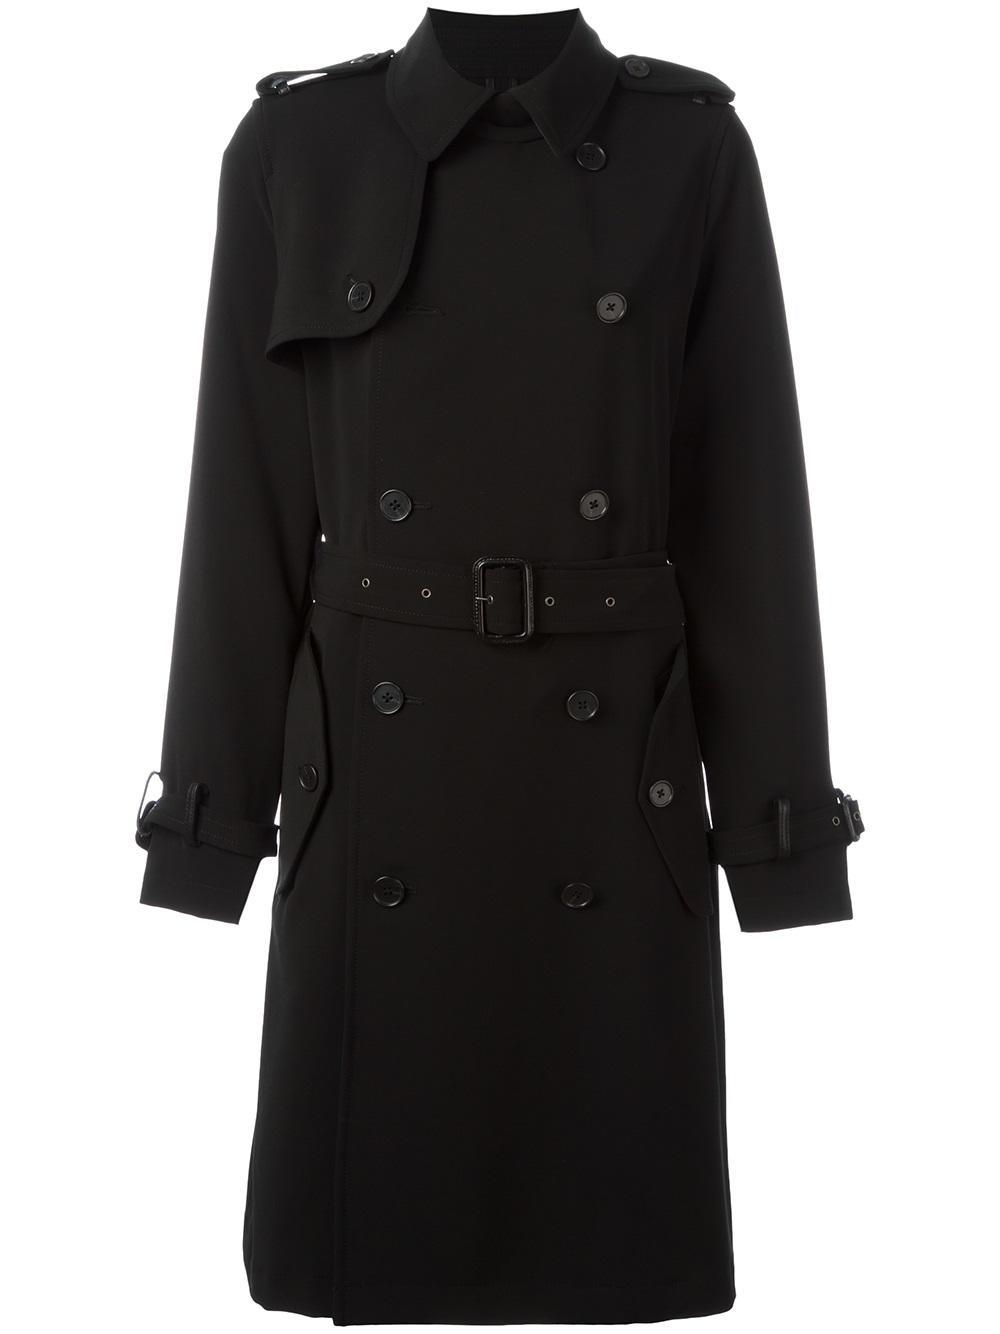 Polo Ralph Lauren Synthetic Trench Coat Overcoat Women in Black - Lyst